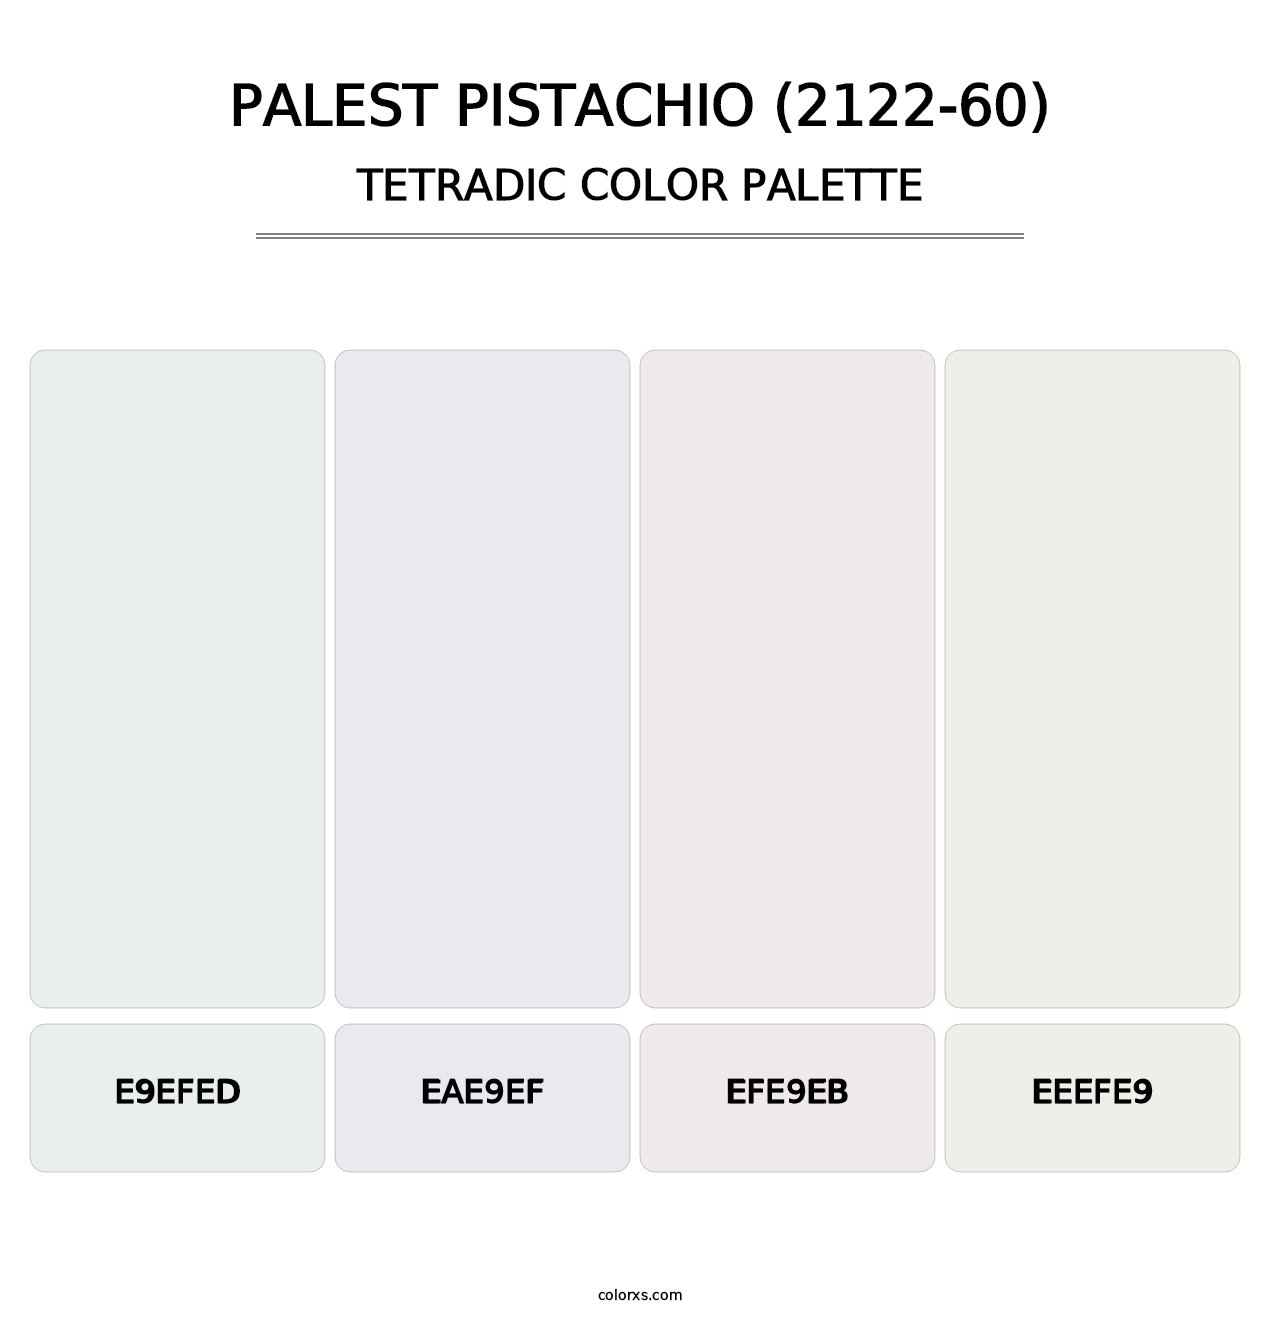 Palest Pistachio (2122-60) - Tetradic Color Palette